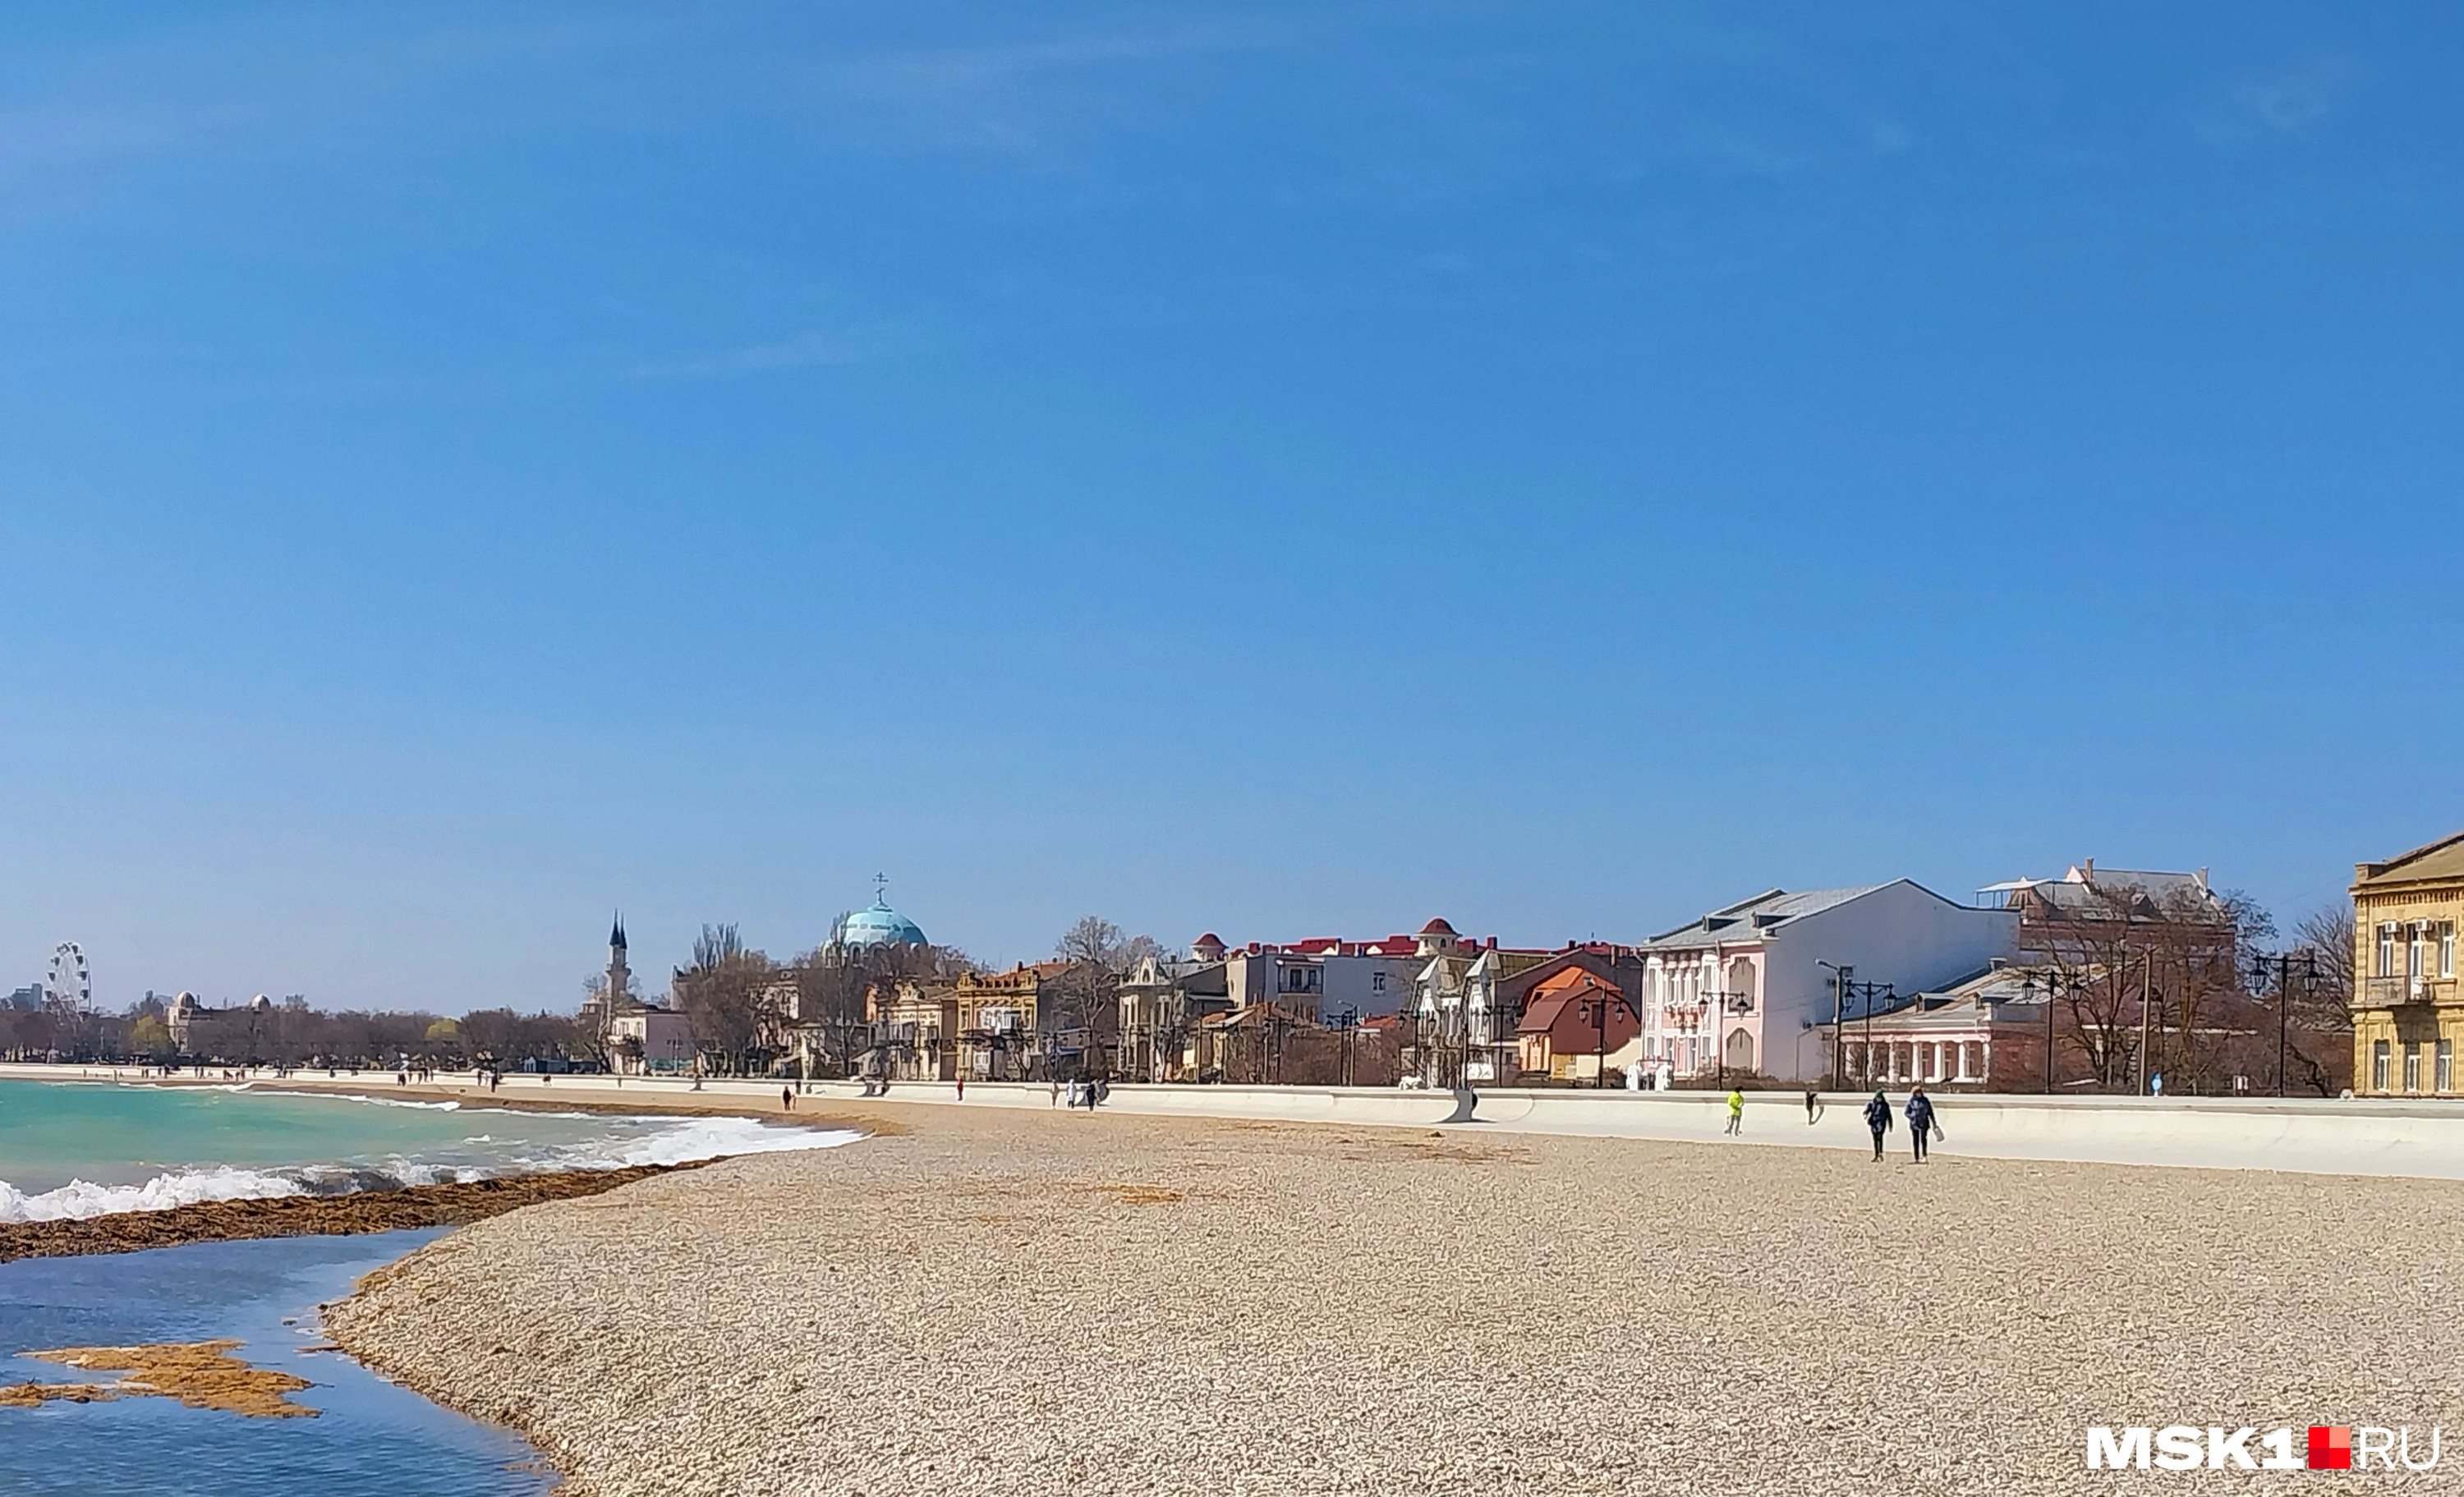 Крымские пляжи к 1 мая должны полностью благоустроить, чтобы до 1 июня специальная комиссия выдала владельцам или арендаторам разрешение на эксплуатацию